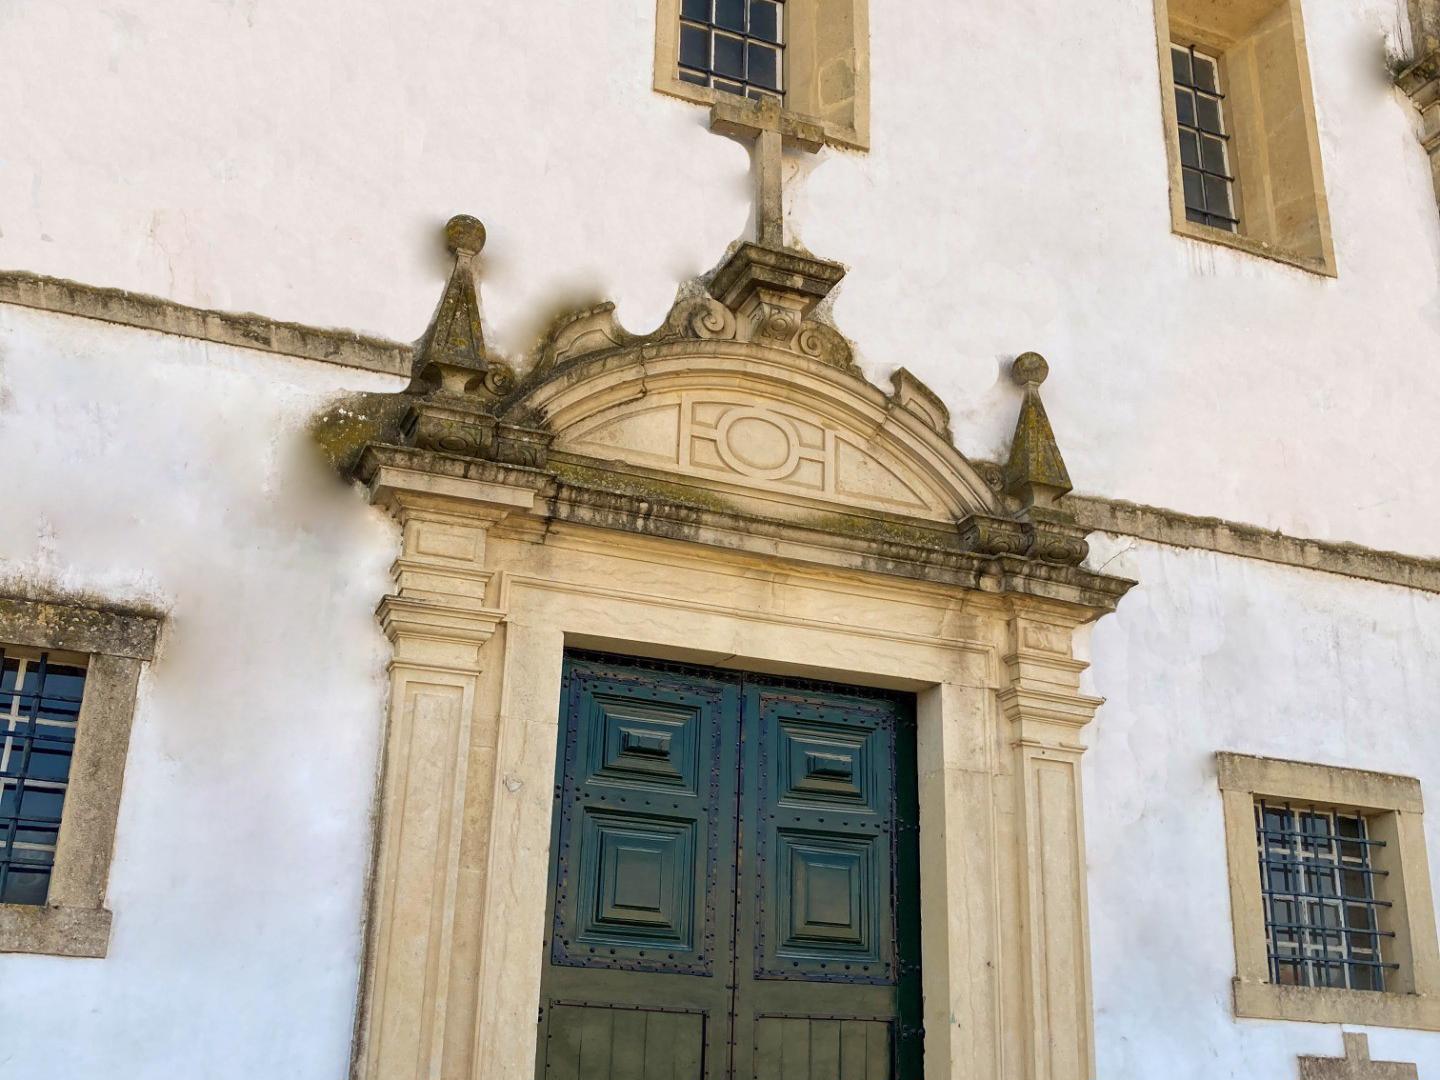 Fachada - O Convento de São Francisco foi fundado no ano de 1624 por frades franciscanos oriundos da comunidade religiosa de Santa Cita. Mandado edificar pelo rei Filipe III, trata-se de um templo de estilo maneirista, construído em torno de dois claustros. 